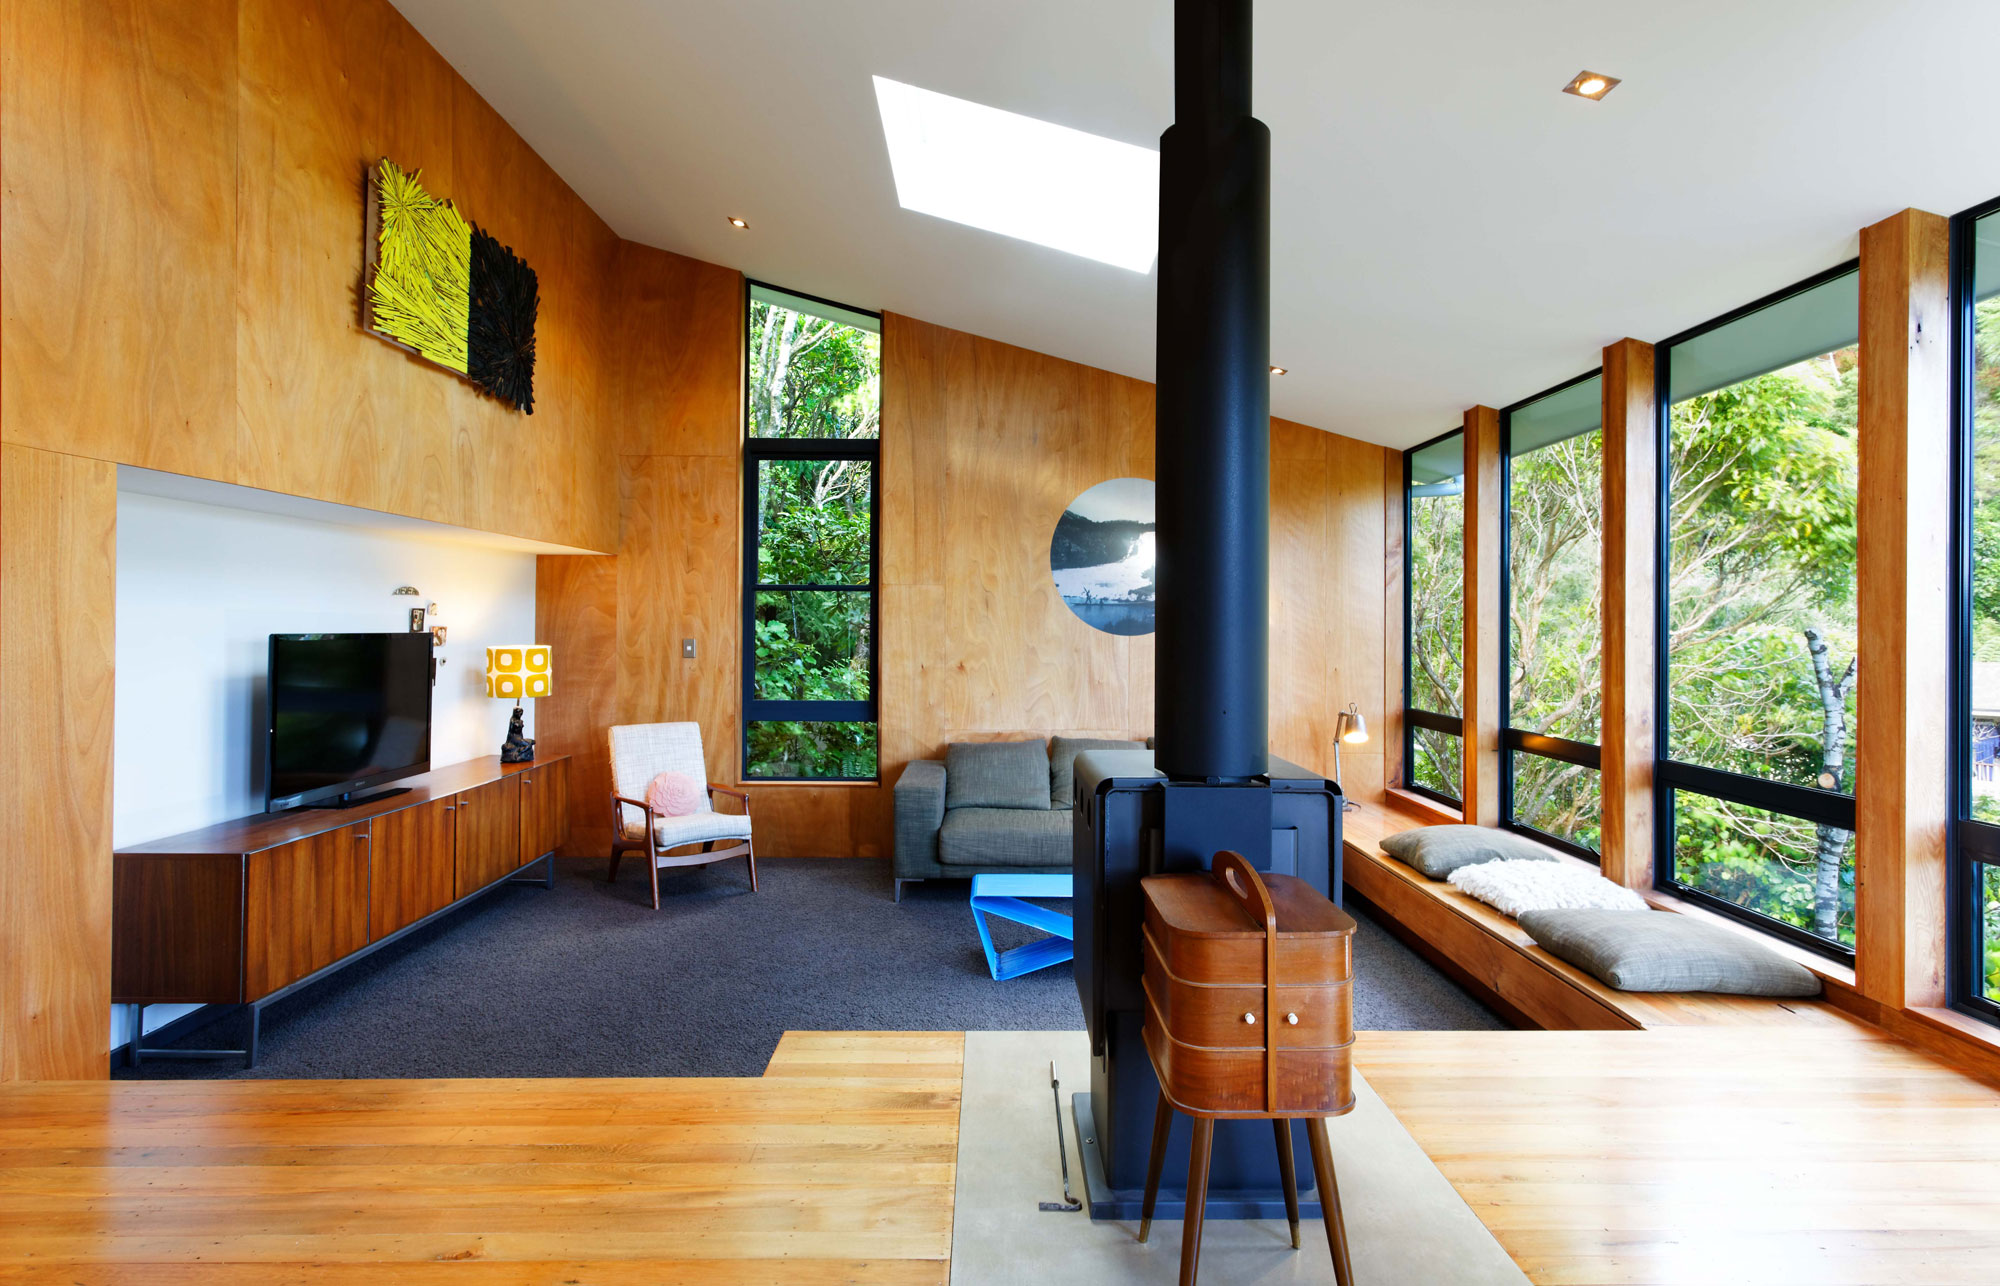 Роскошь и уют деревянного интерьера дома в york bay от paul rolfe architects, новая зеландия